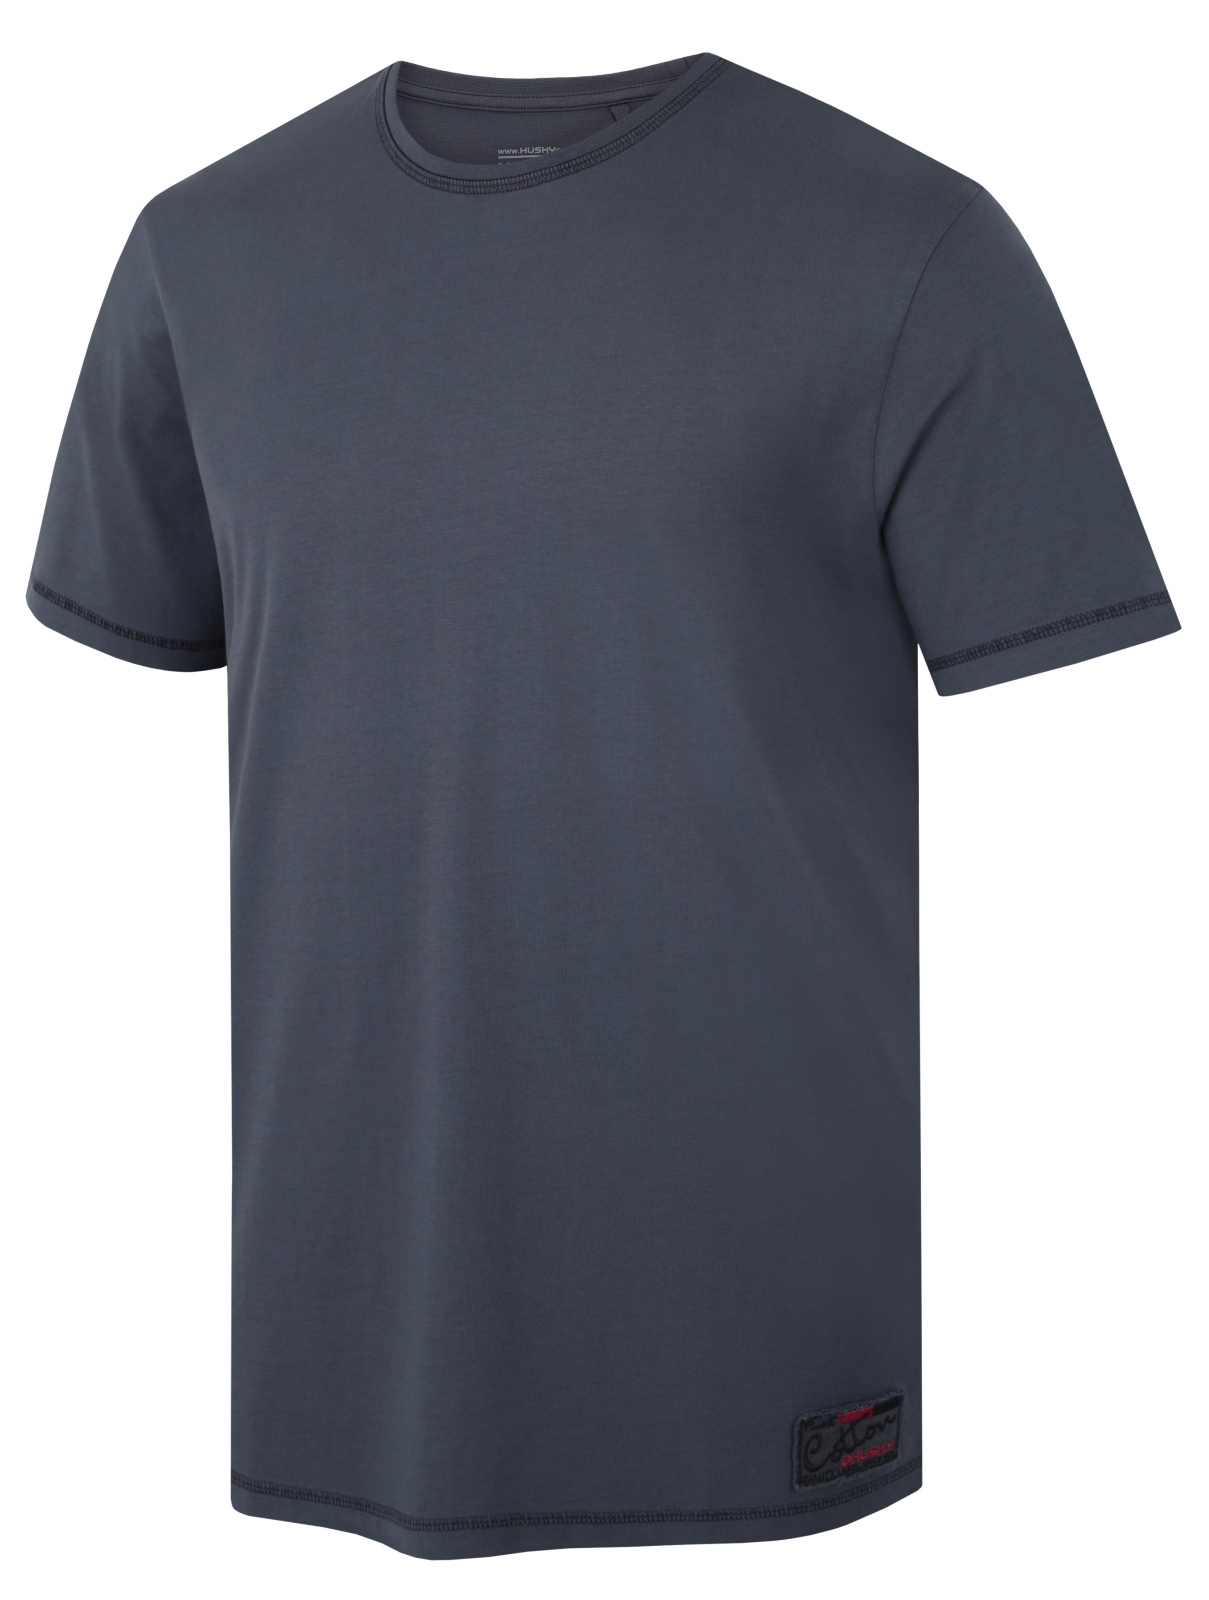 Husky Pánské bavlněné triko Tee Base M dark grey Velikost: M pánské tričko s krátkým rukávem